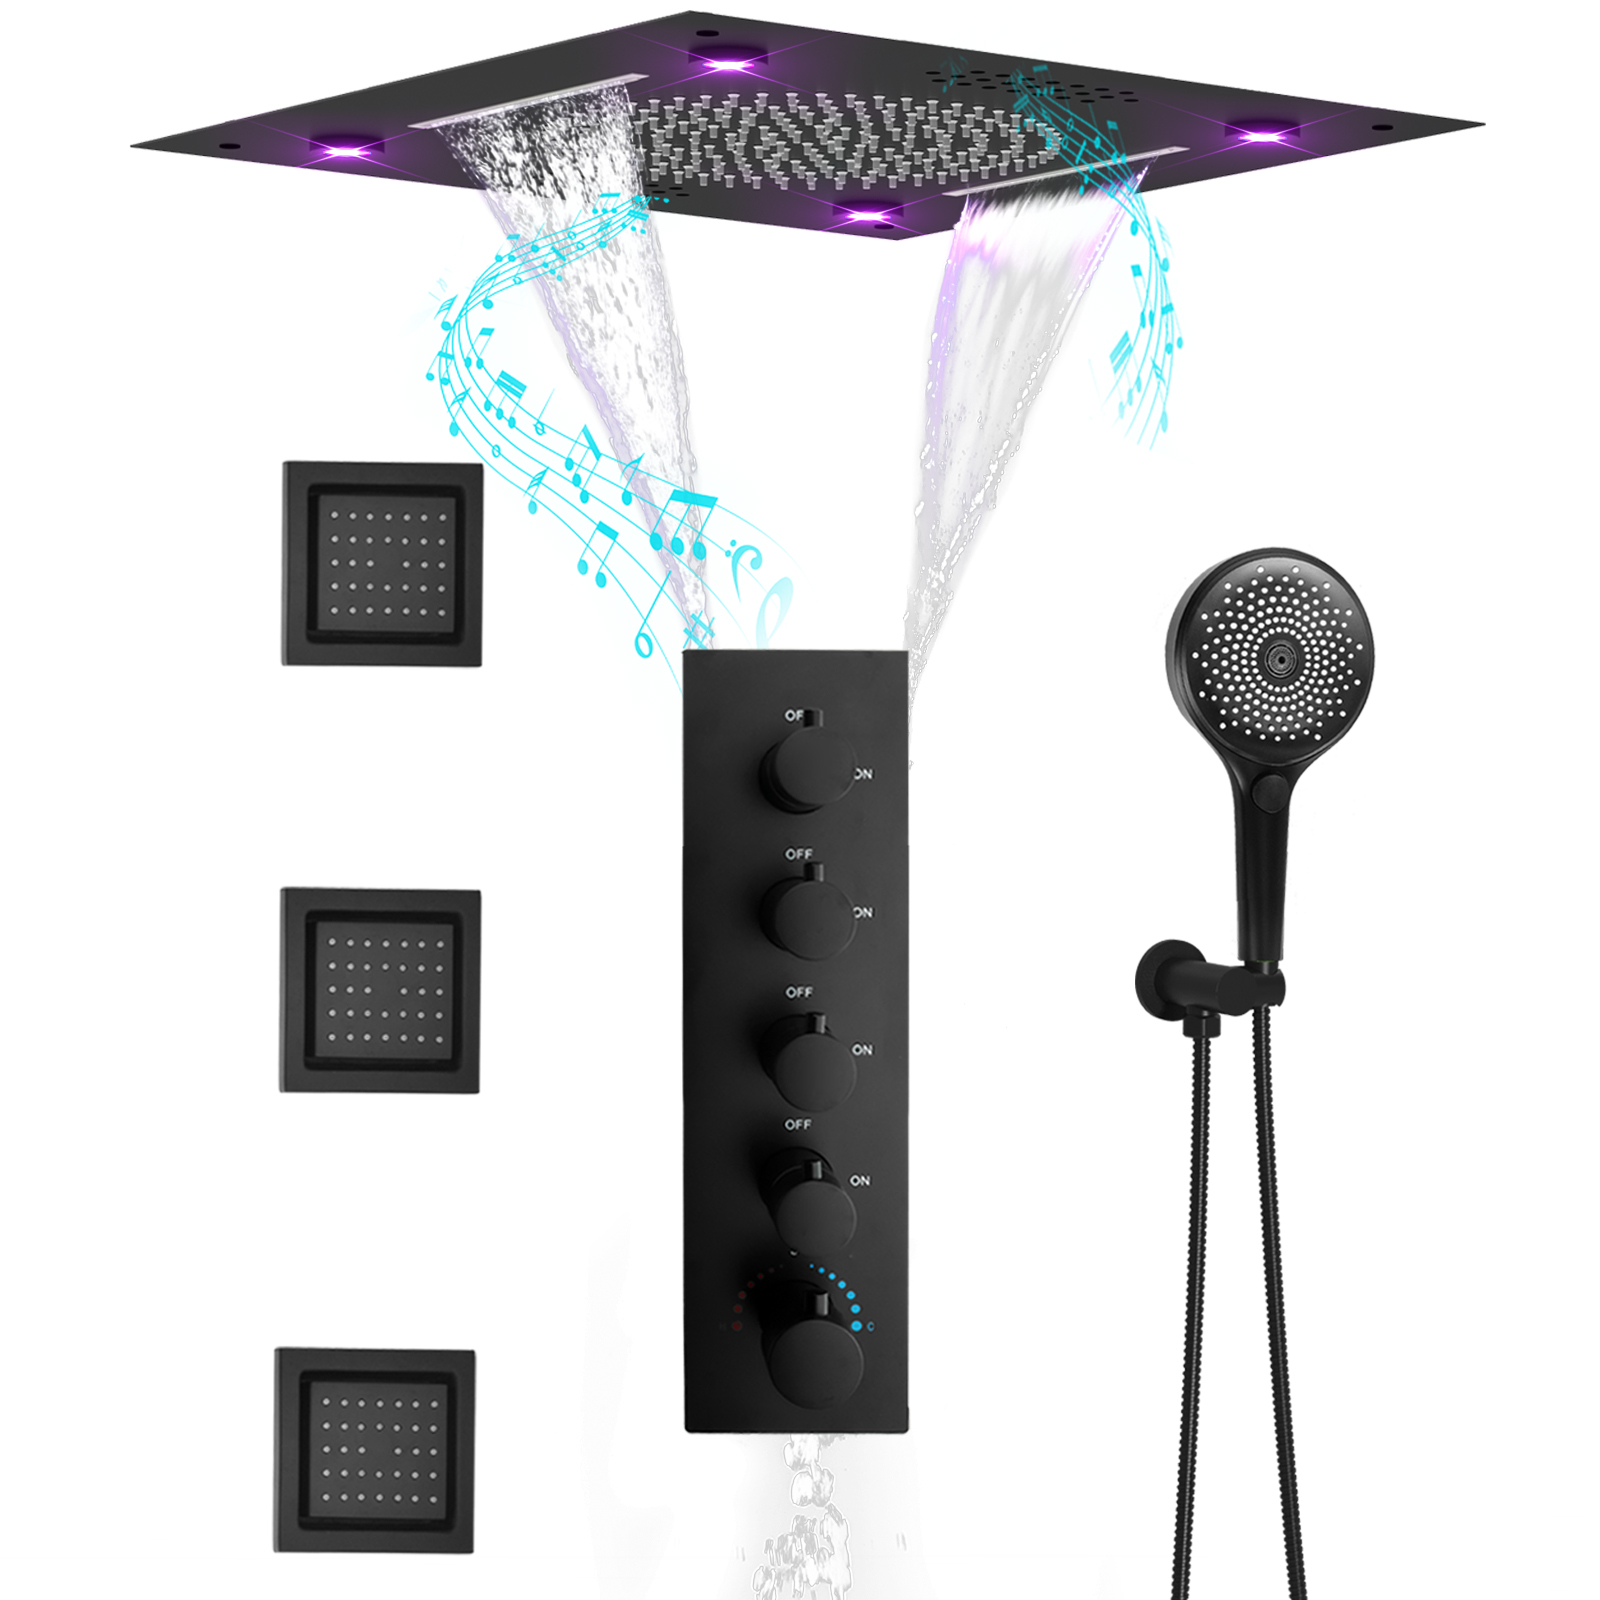 LED Shower System Manufacturer Matte Black Shower Head And Valve Set Wall Hanging High 